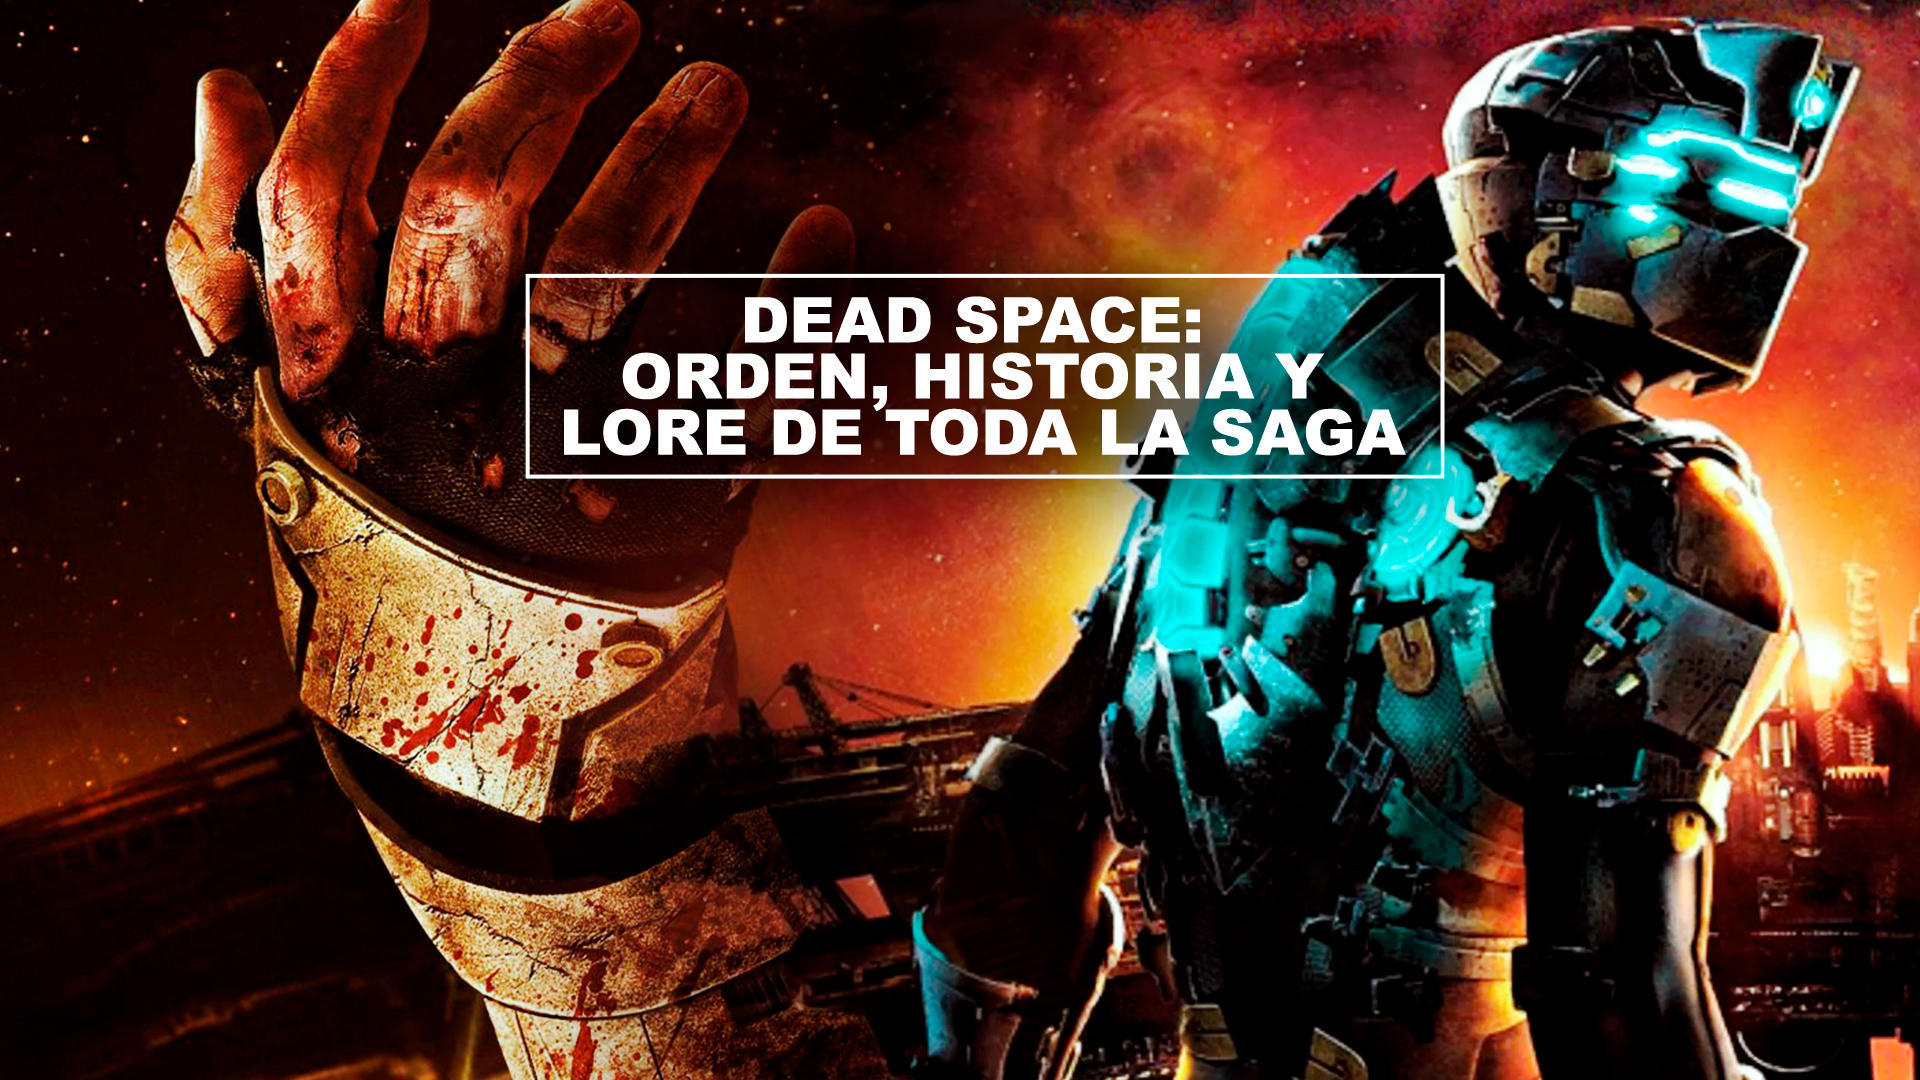 Dead Space: orden, historia y lore de toda la saga